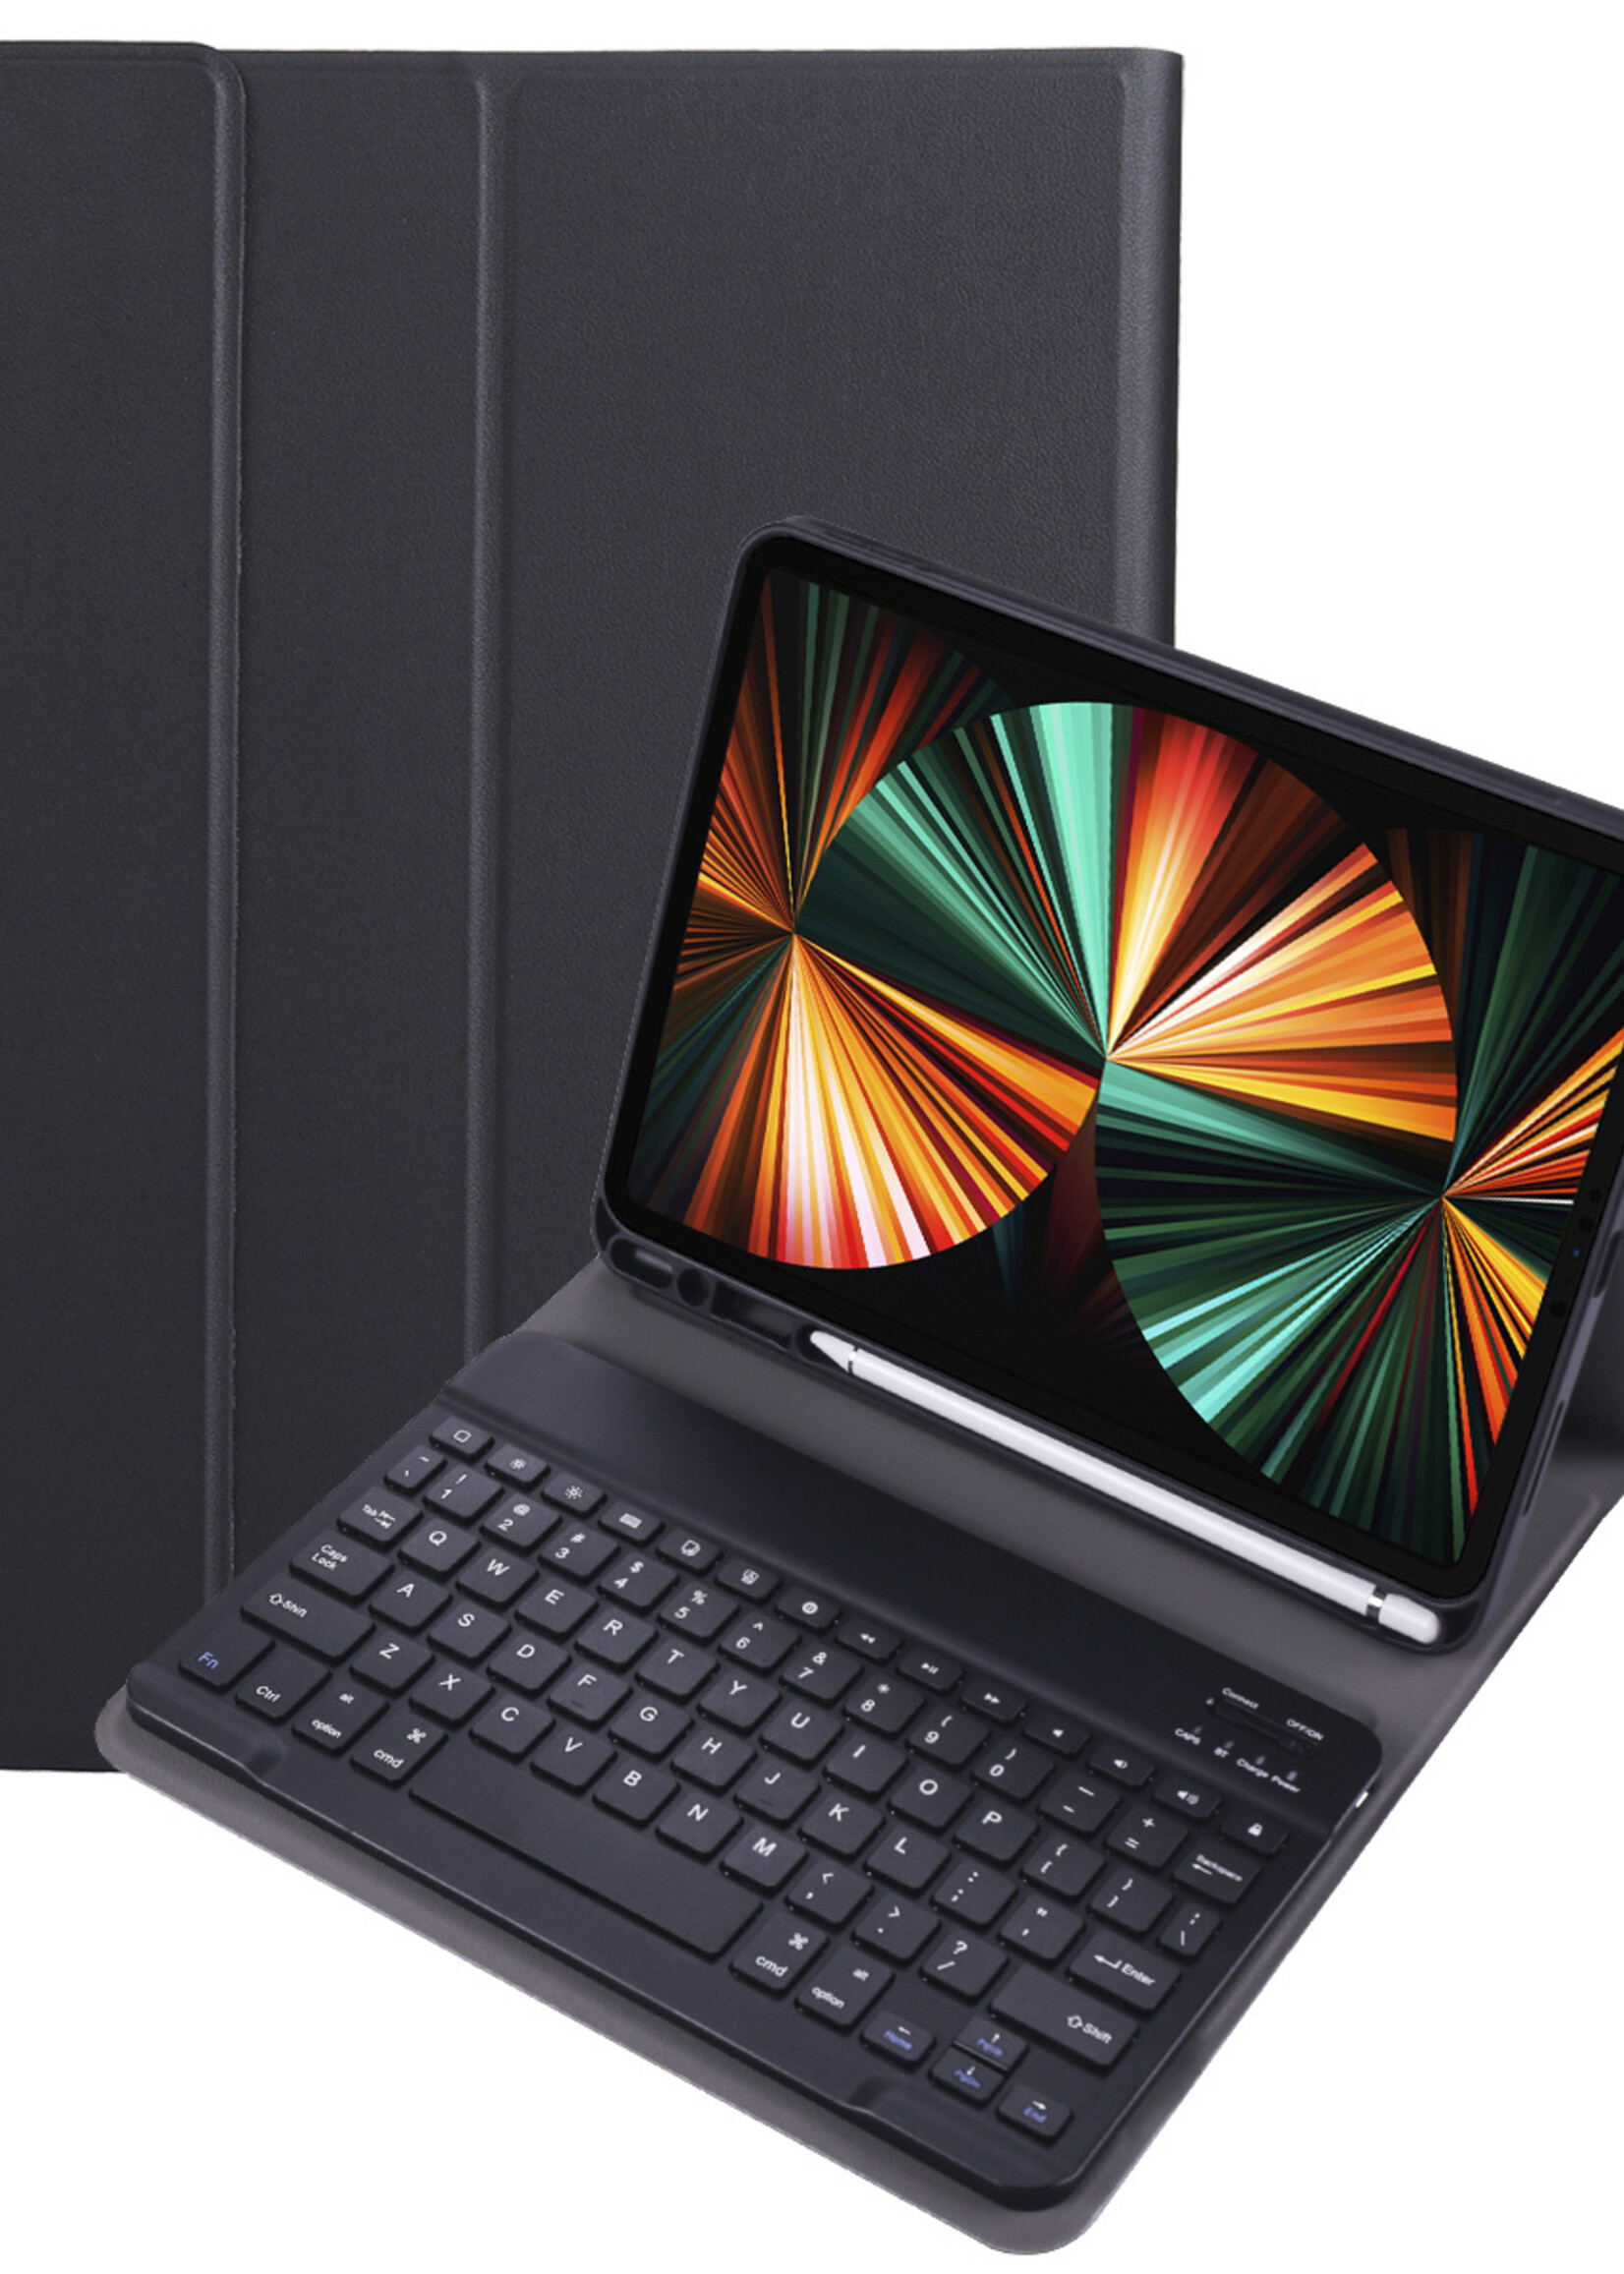 LUQ Hoes Geschikt voor iPad Pro 2018 (11 inch) Hoes Keyboard Cover Toetsenbord Hoesje - Hoesje Geschikt voor iPad Pro 11 inch (2018) Toetsenbord Hoes - Zwart